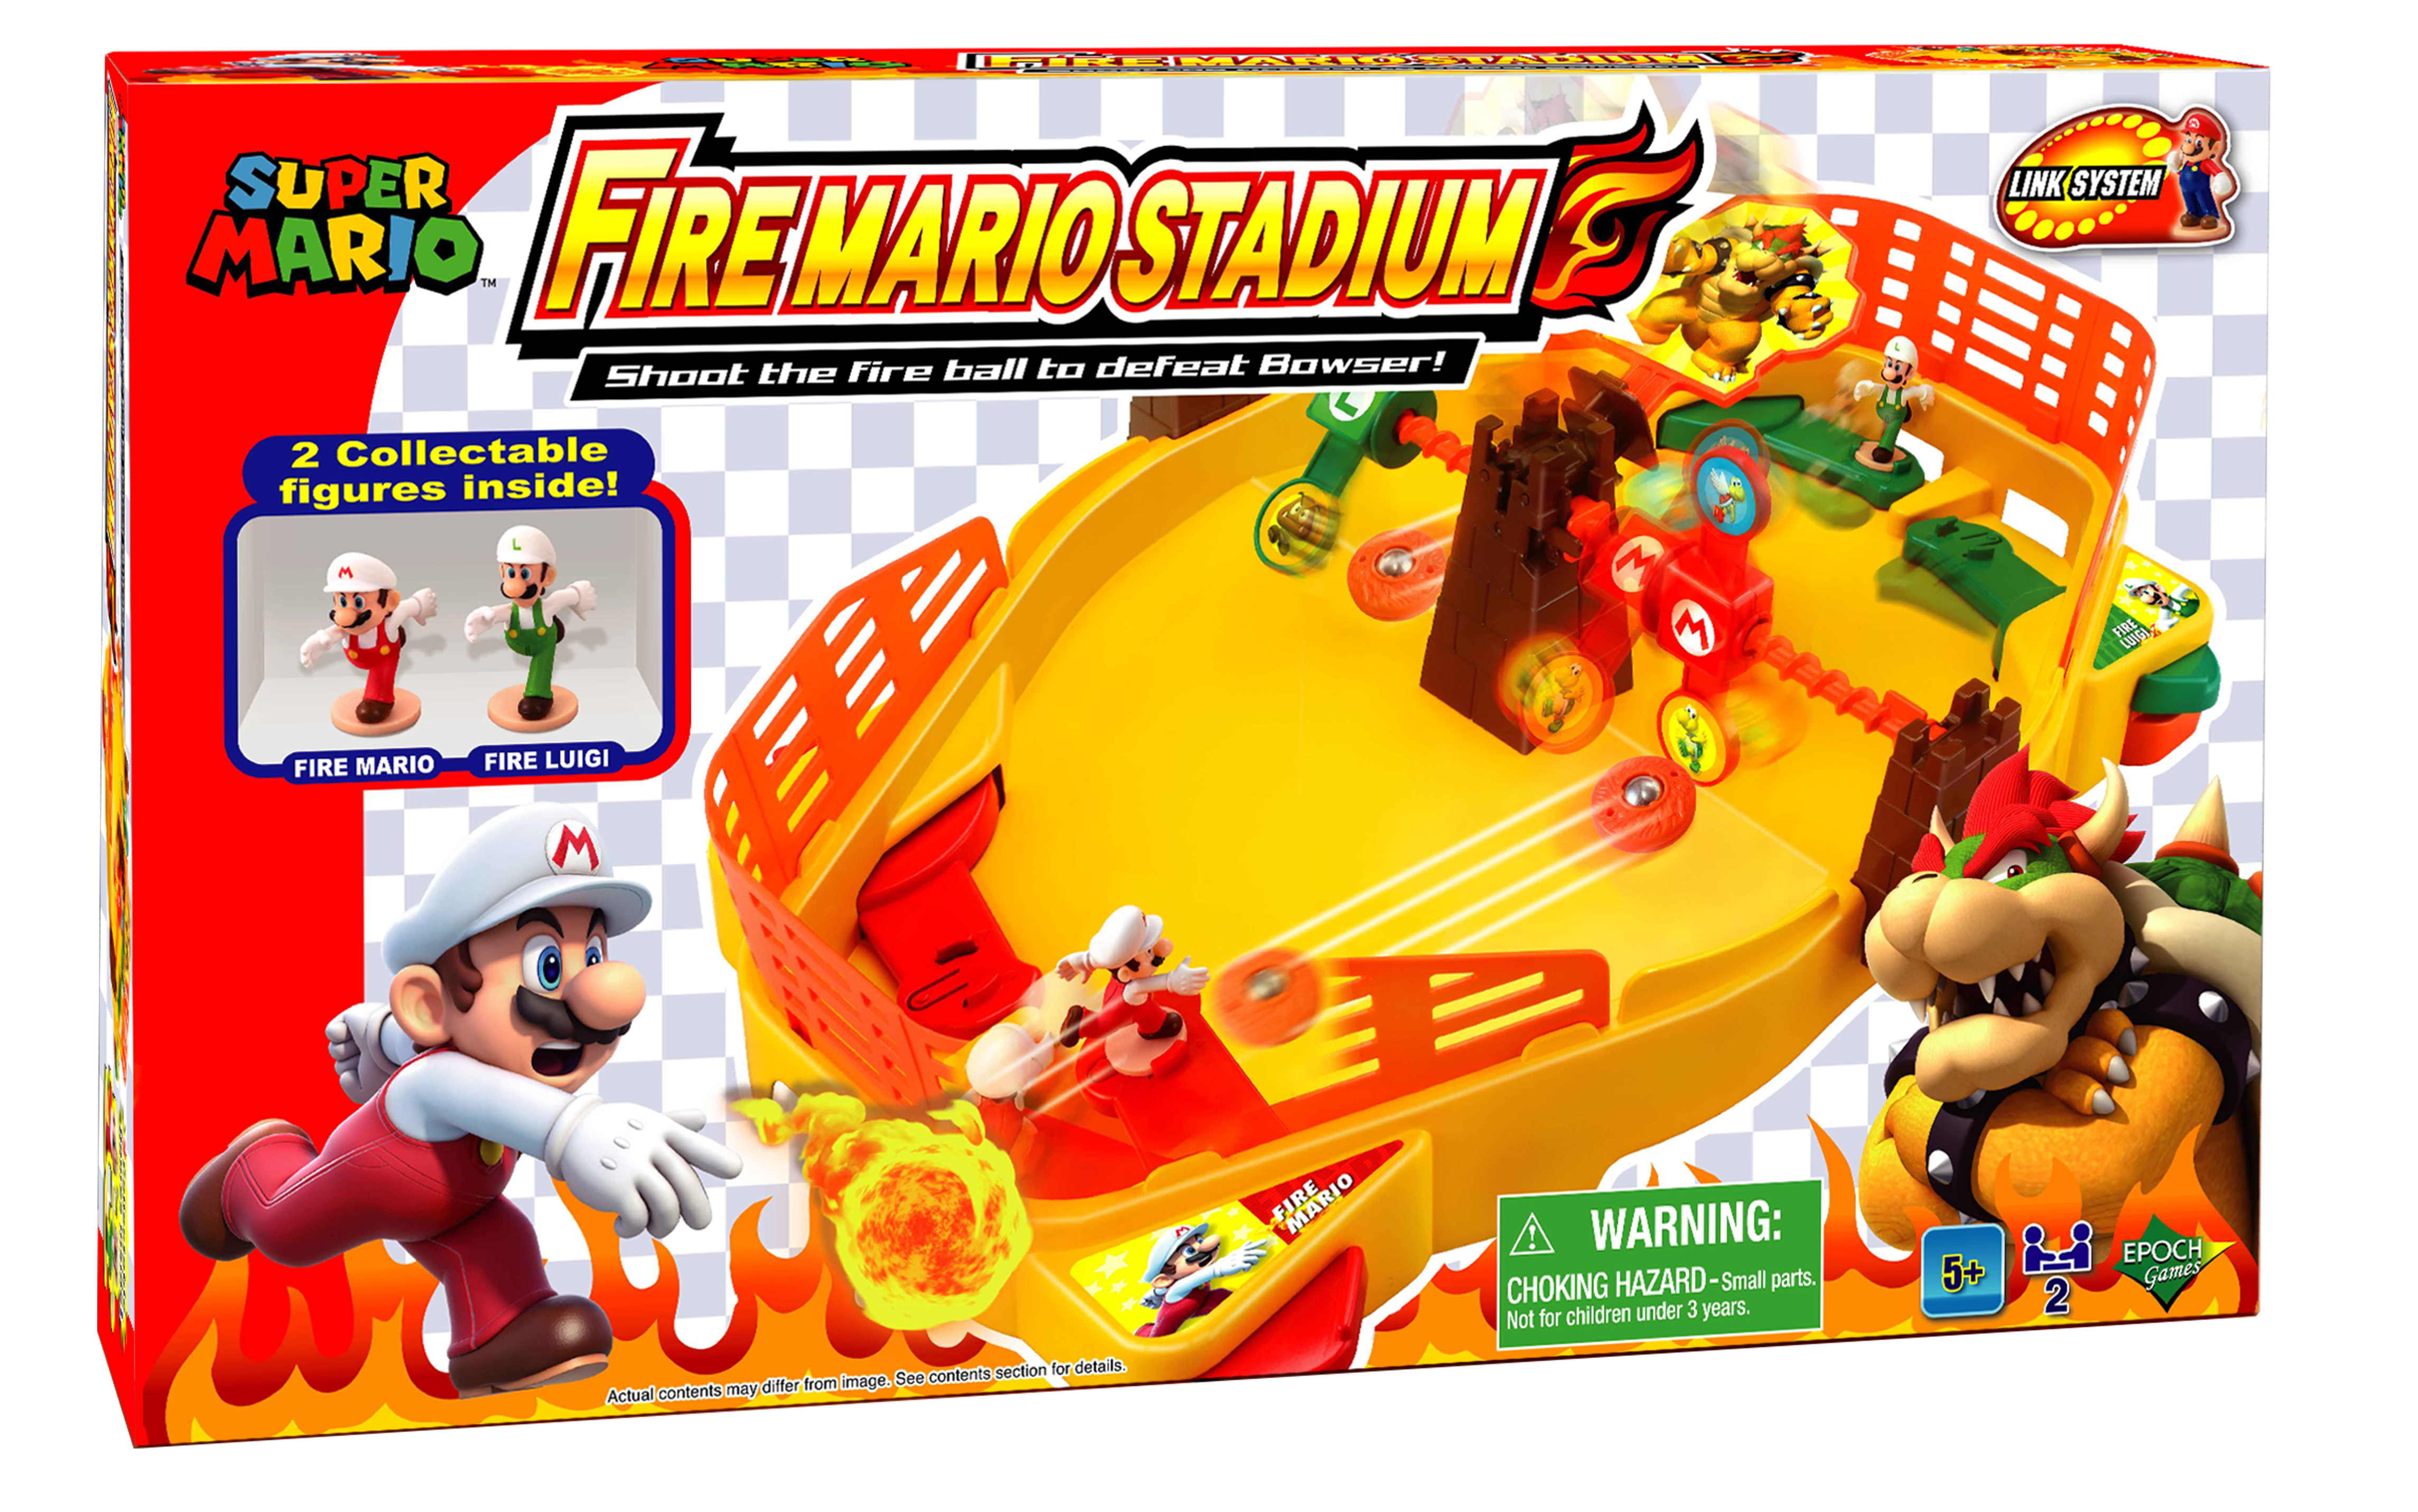 Fire mario stadium - Super Mario